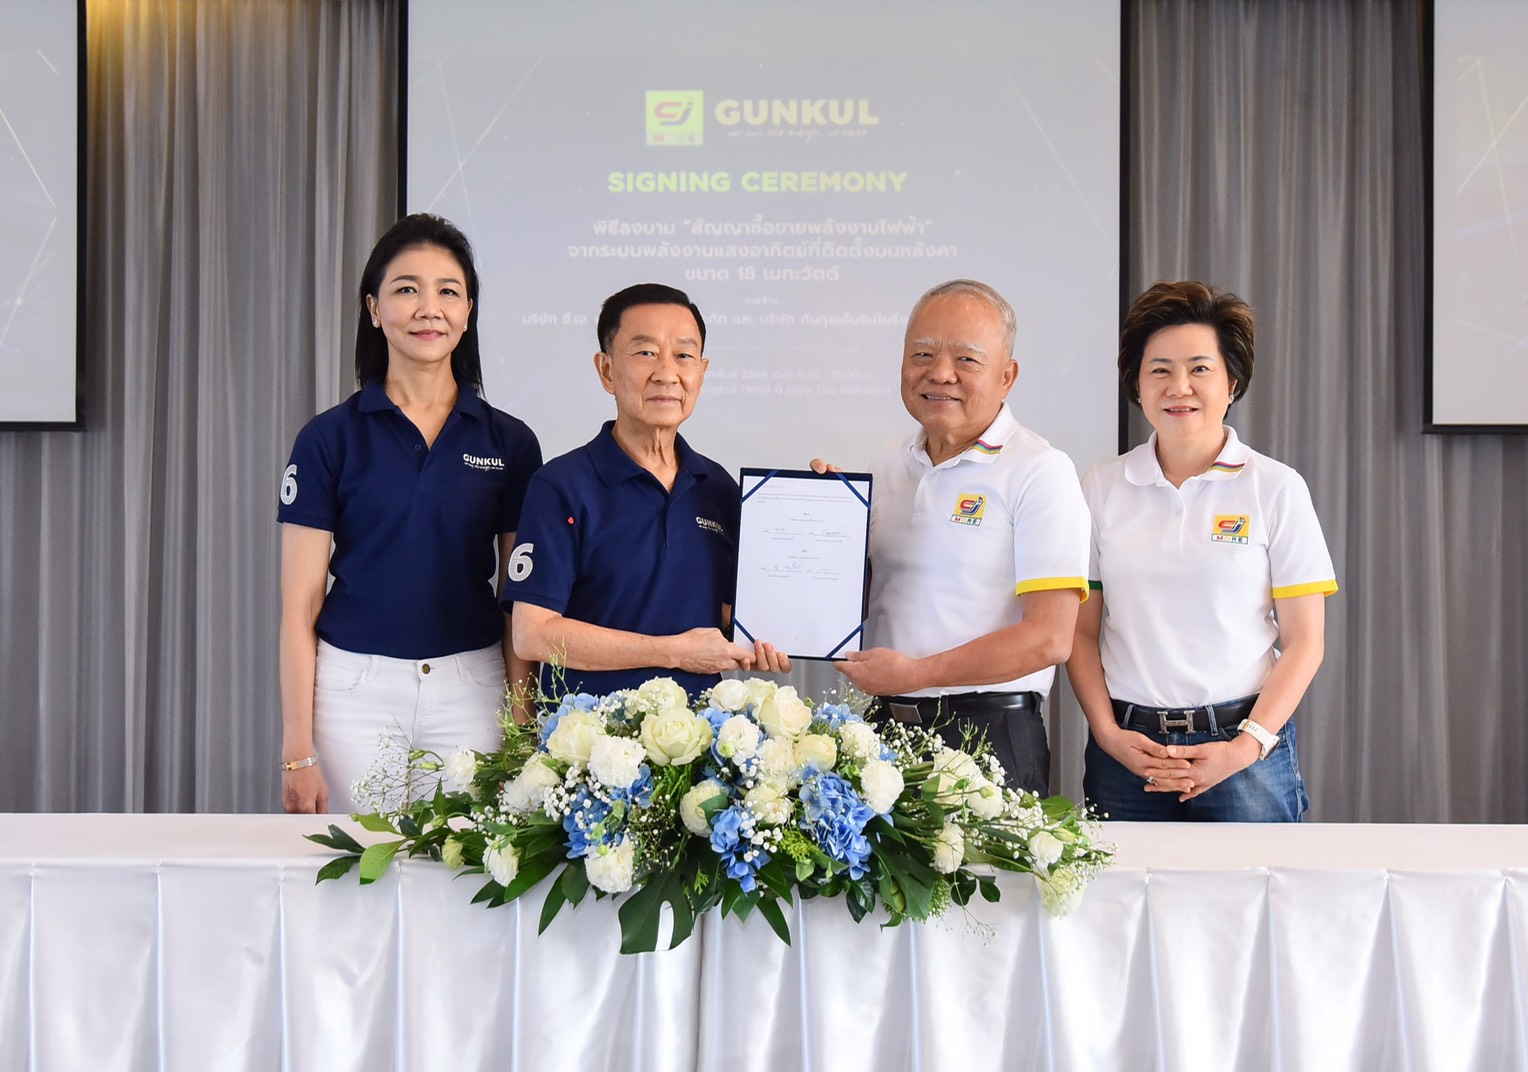 GUNKUL จับมือ CJ เซ็นสัญญาโซลาร์รูฟท๊อปเริ่มต้นกว่า 500 สาขาทั่วประเทศ